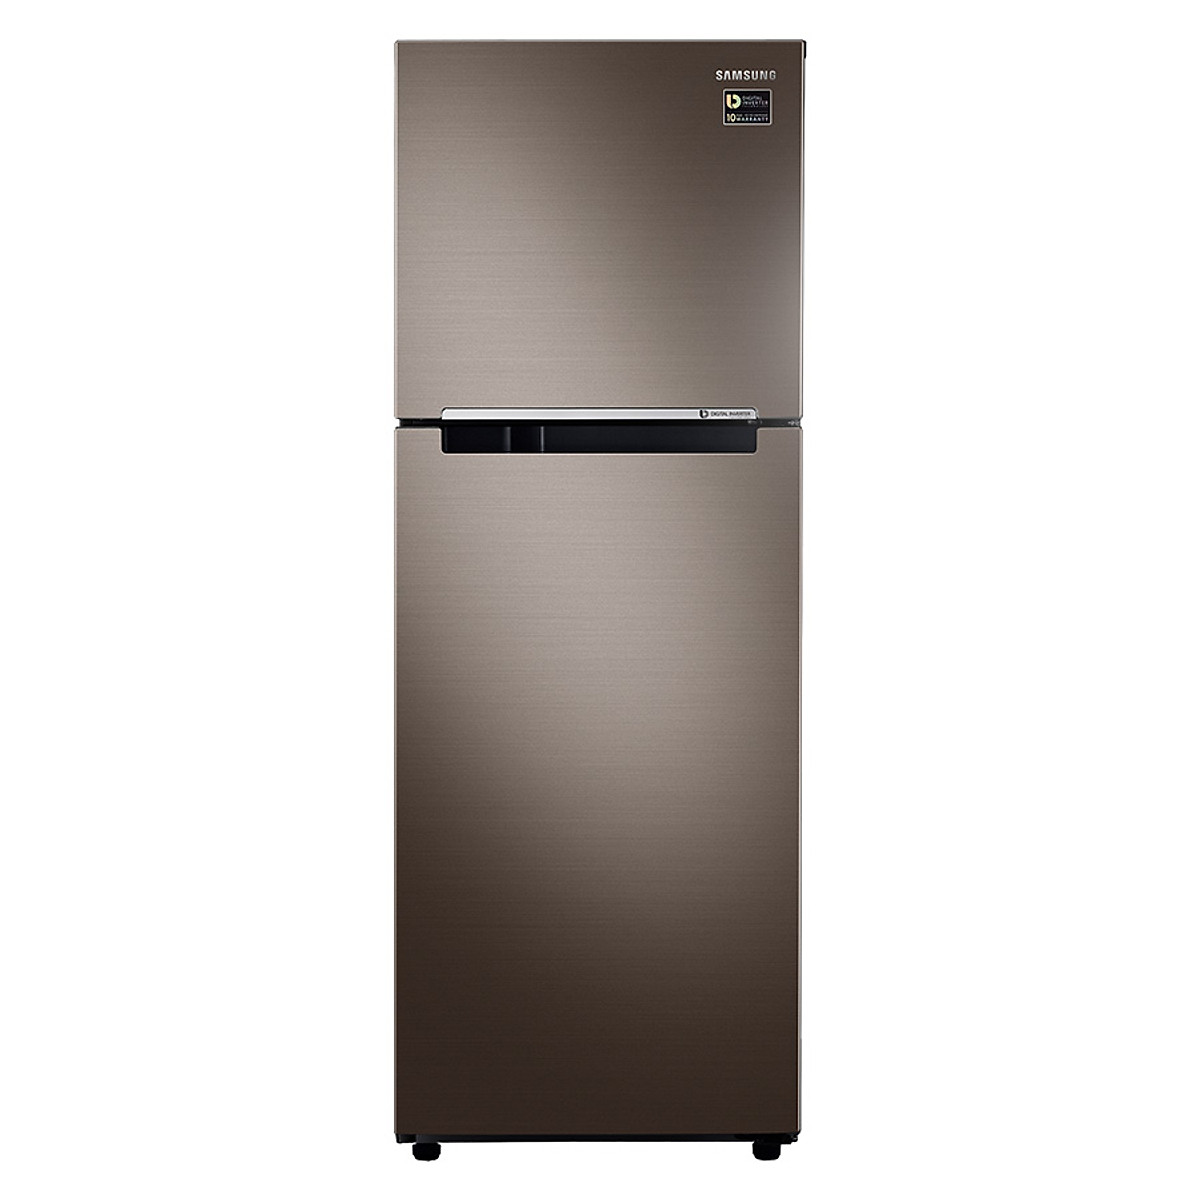 Tủ lạnh Samsung Inverter 236 lít RT22M4040DX/SV - Chỉ giao khu vực Hà Nội